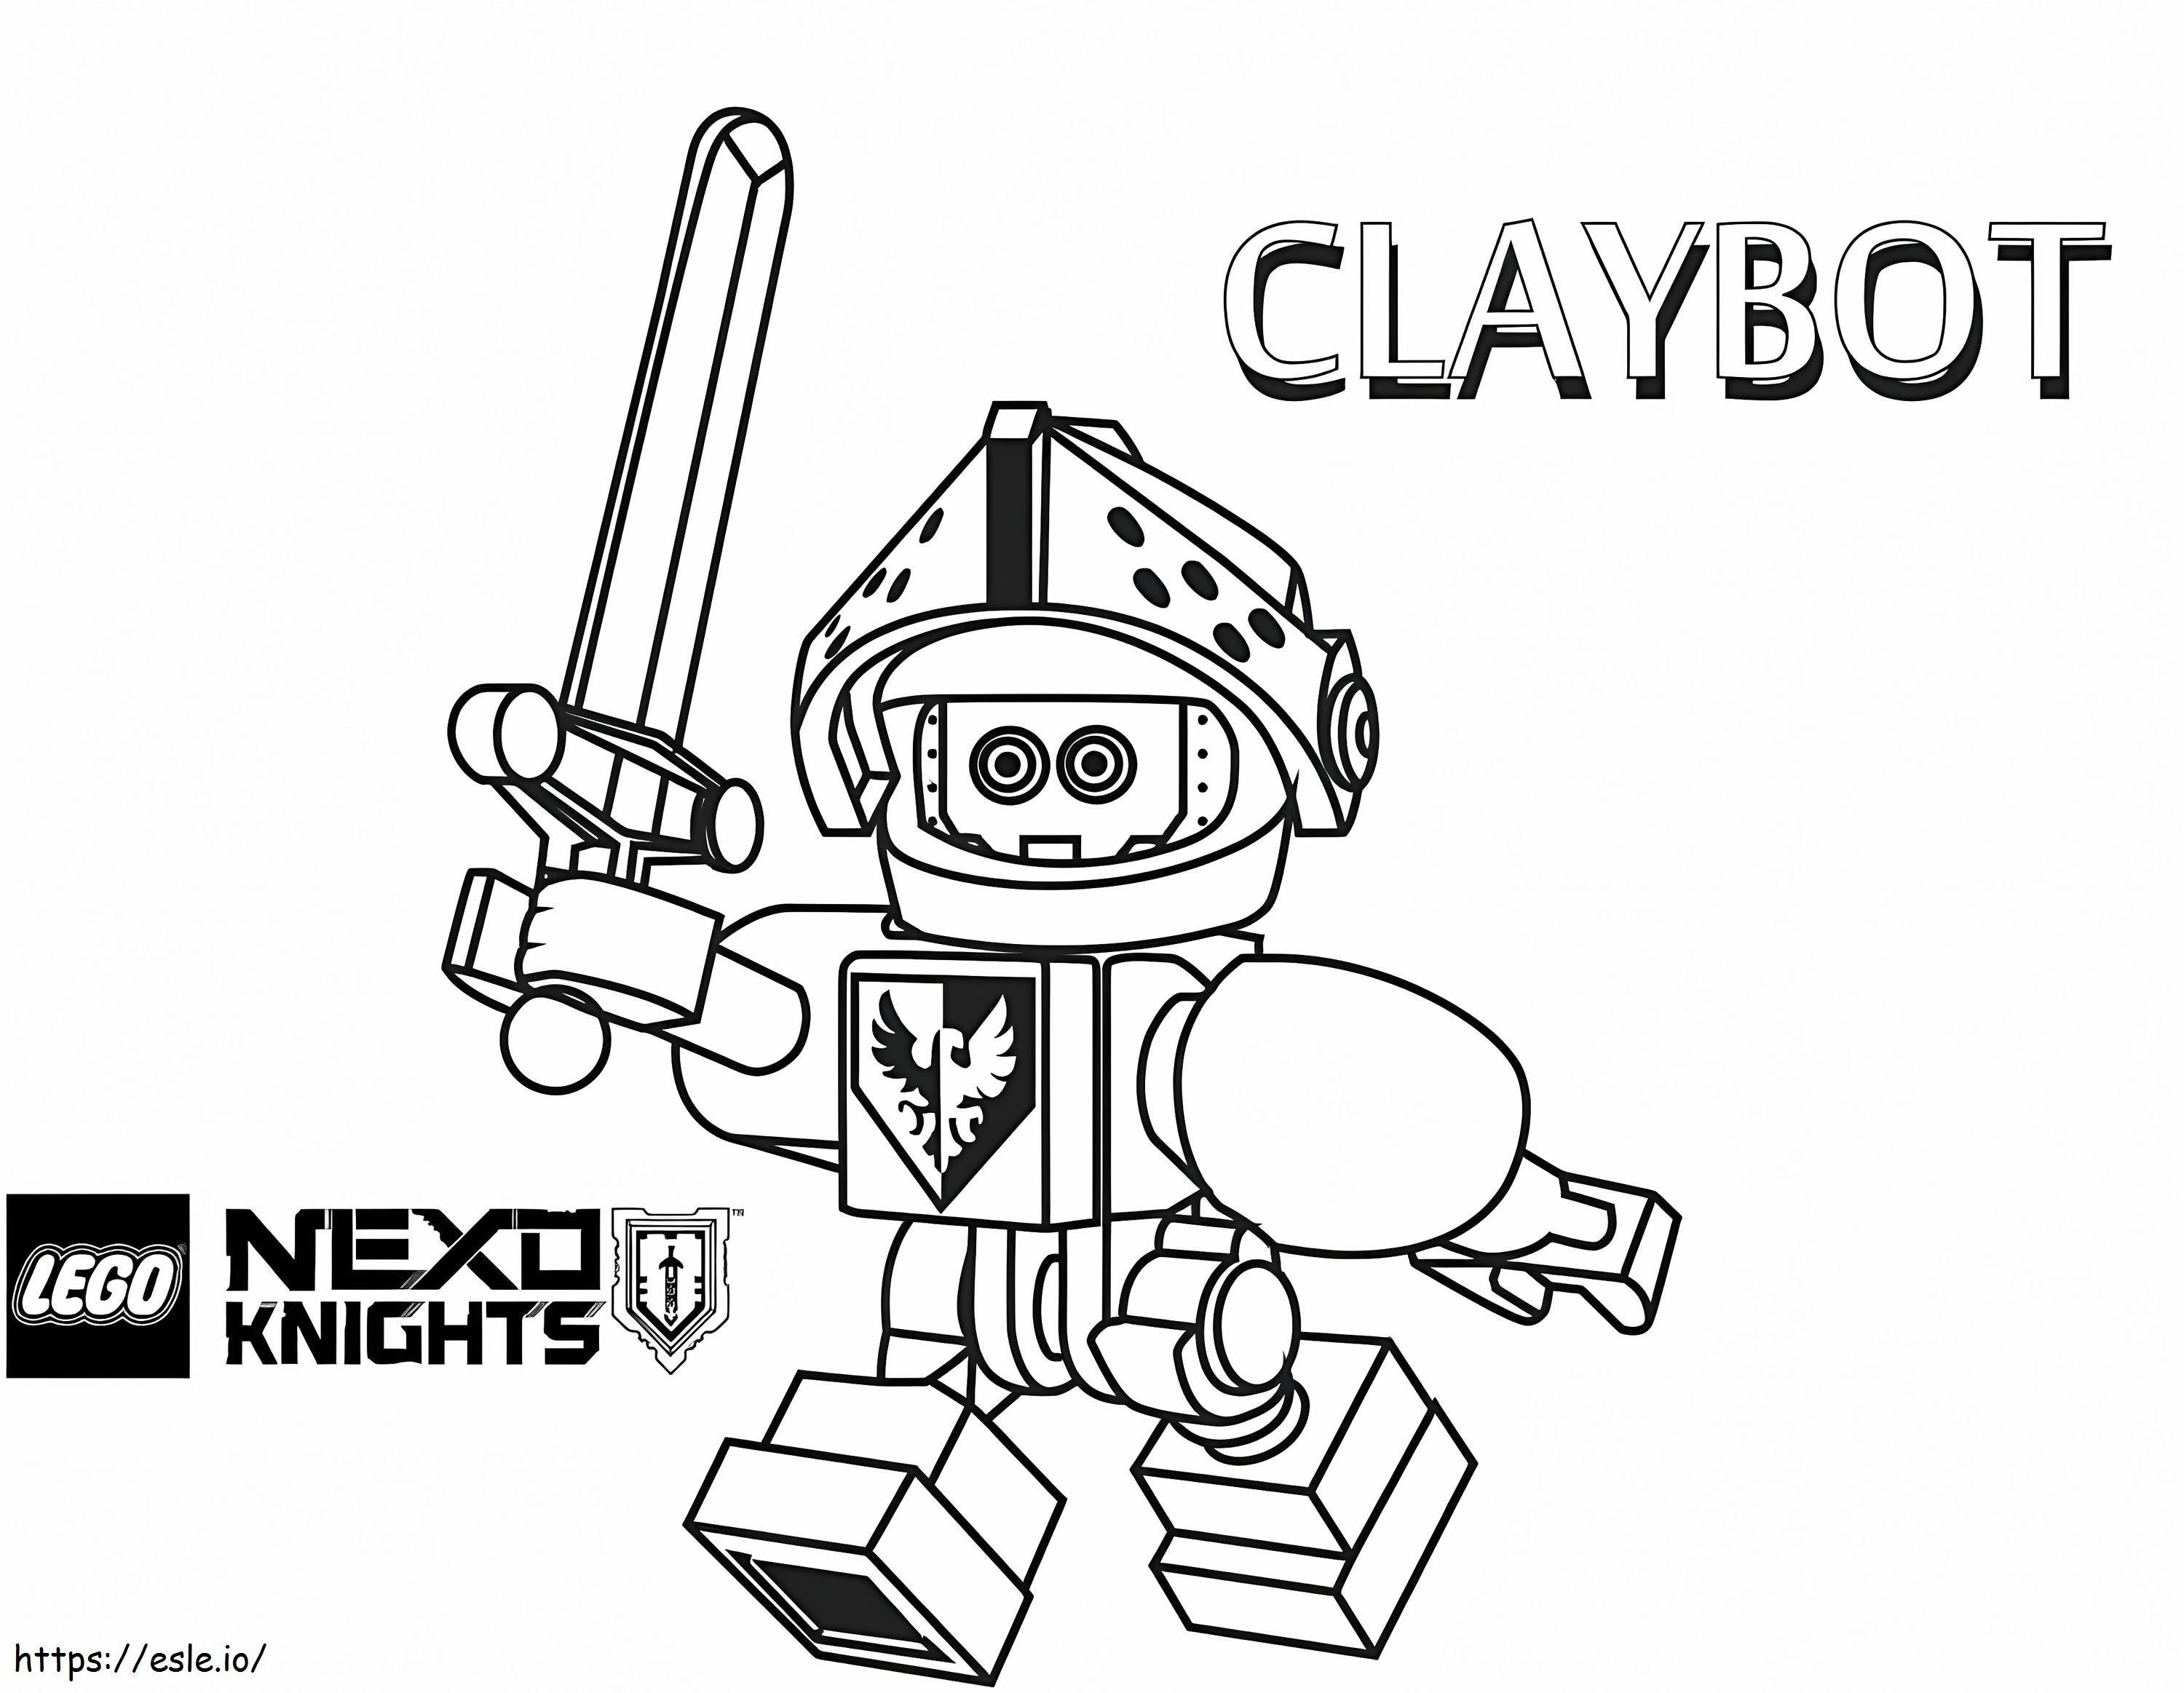 Claybo z Nexo Knights kolorowanka